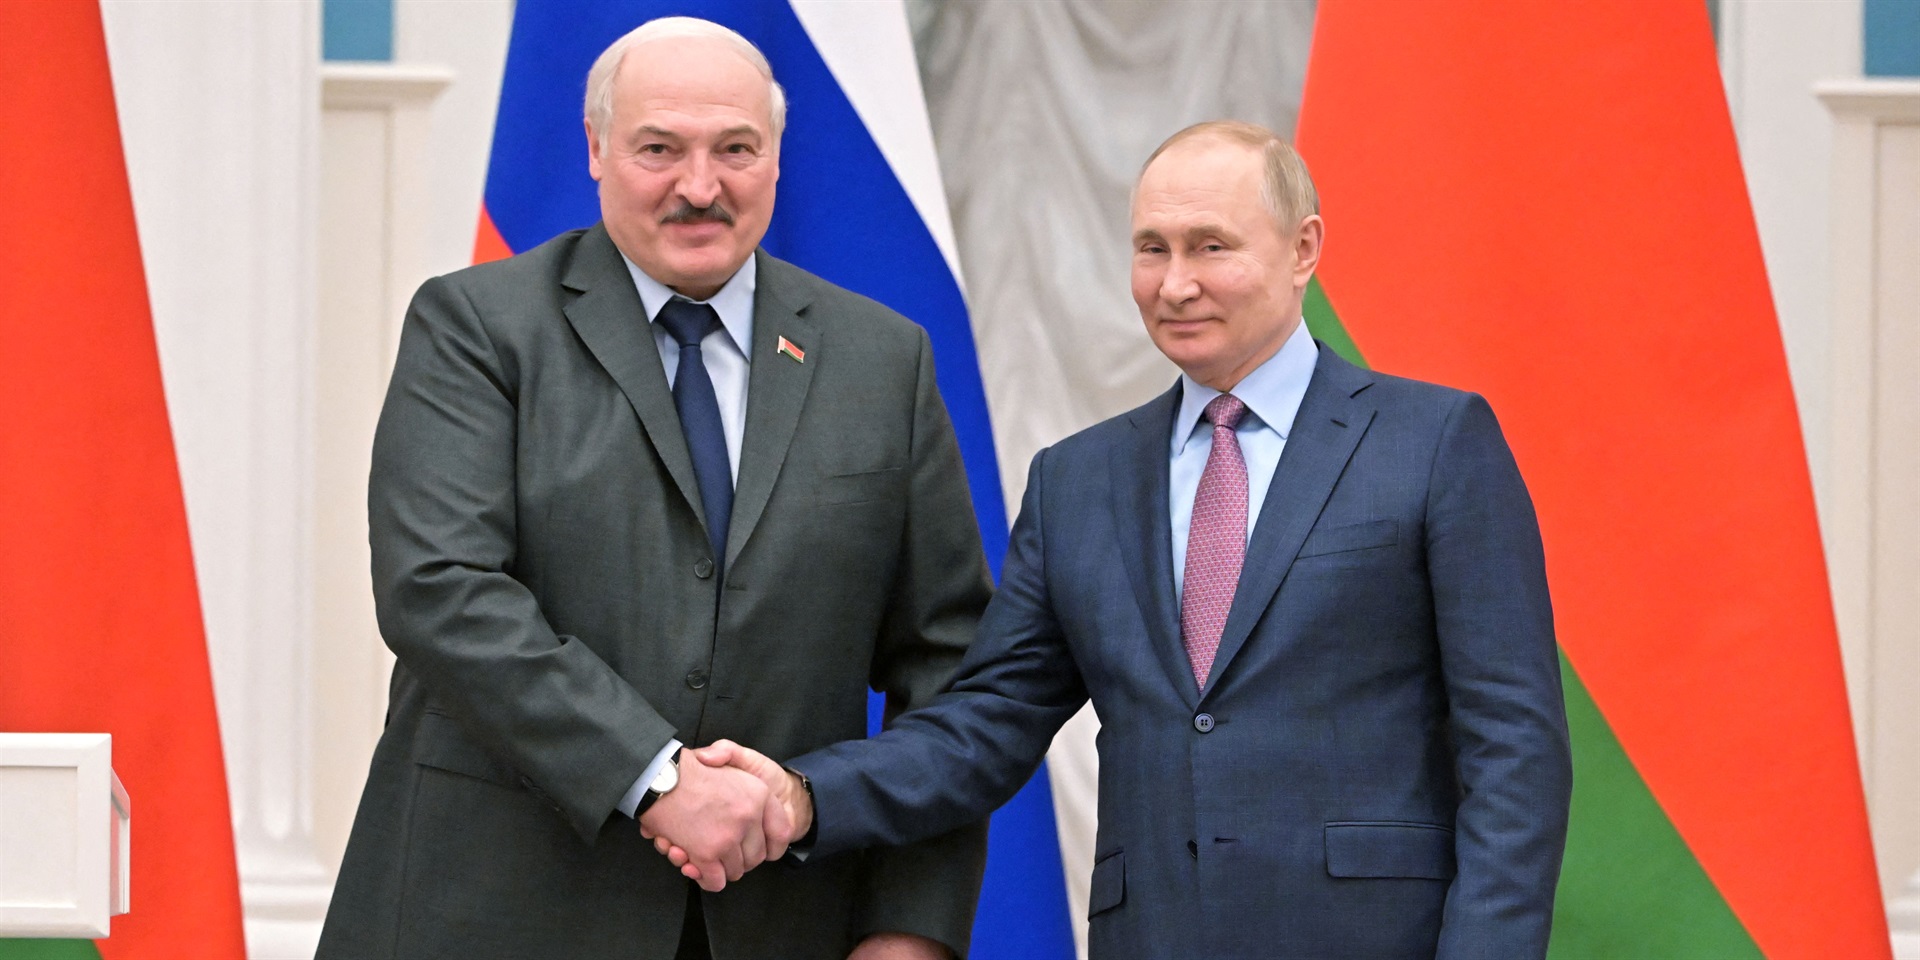 Diktator Belarus Lukashenko, yang dianggap sebagai boneka Putin, mengatakan ‘tidak dapat diterima’ jika nuklir digunakan di Ukraina